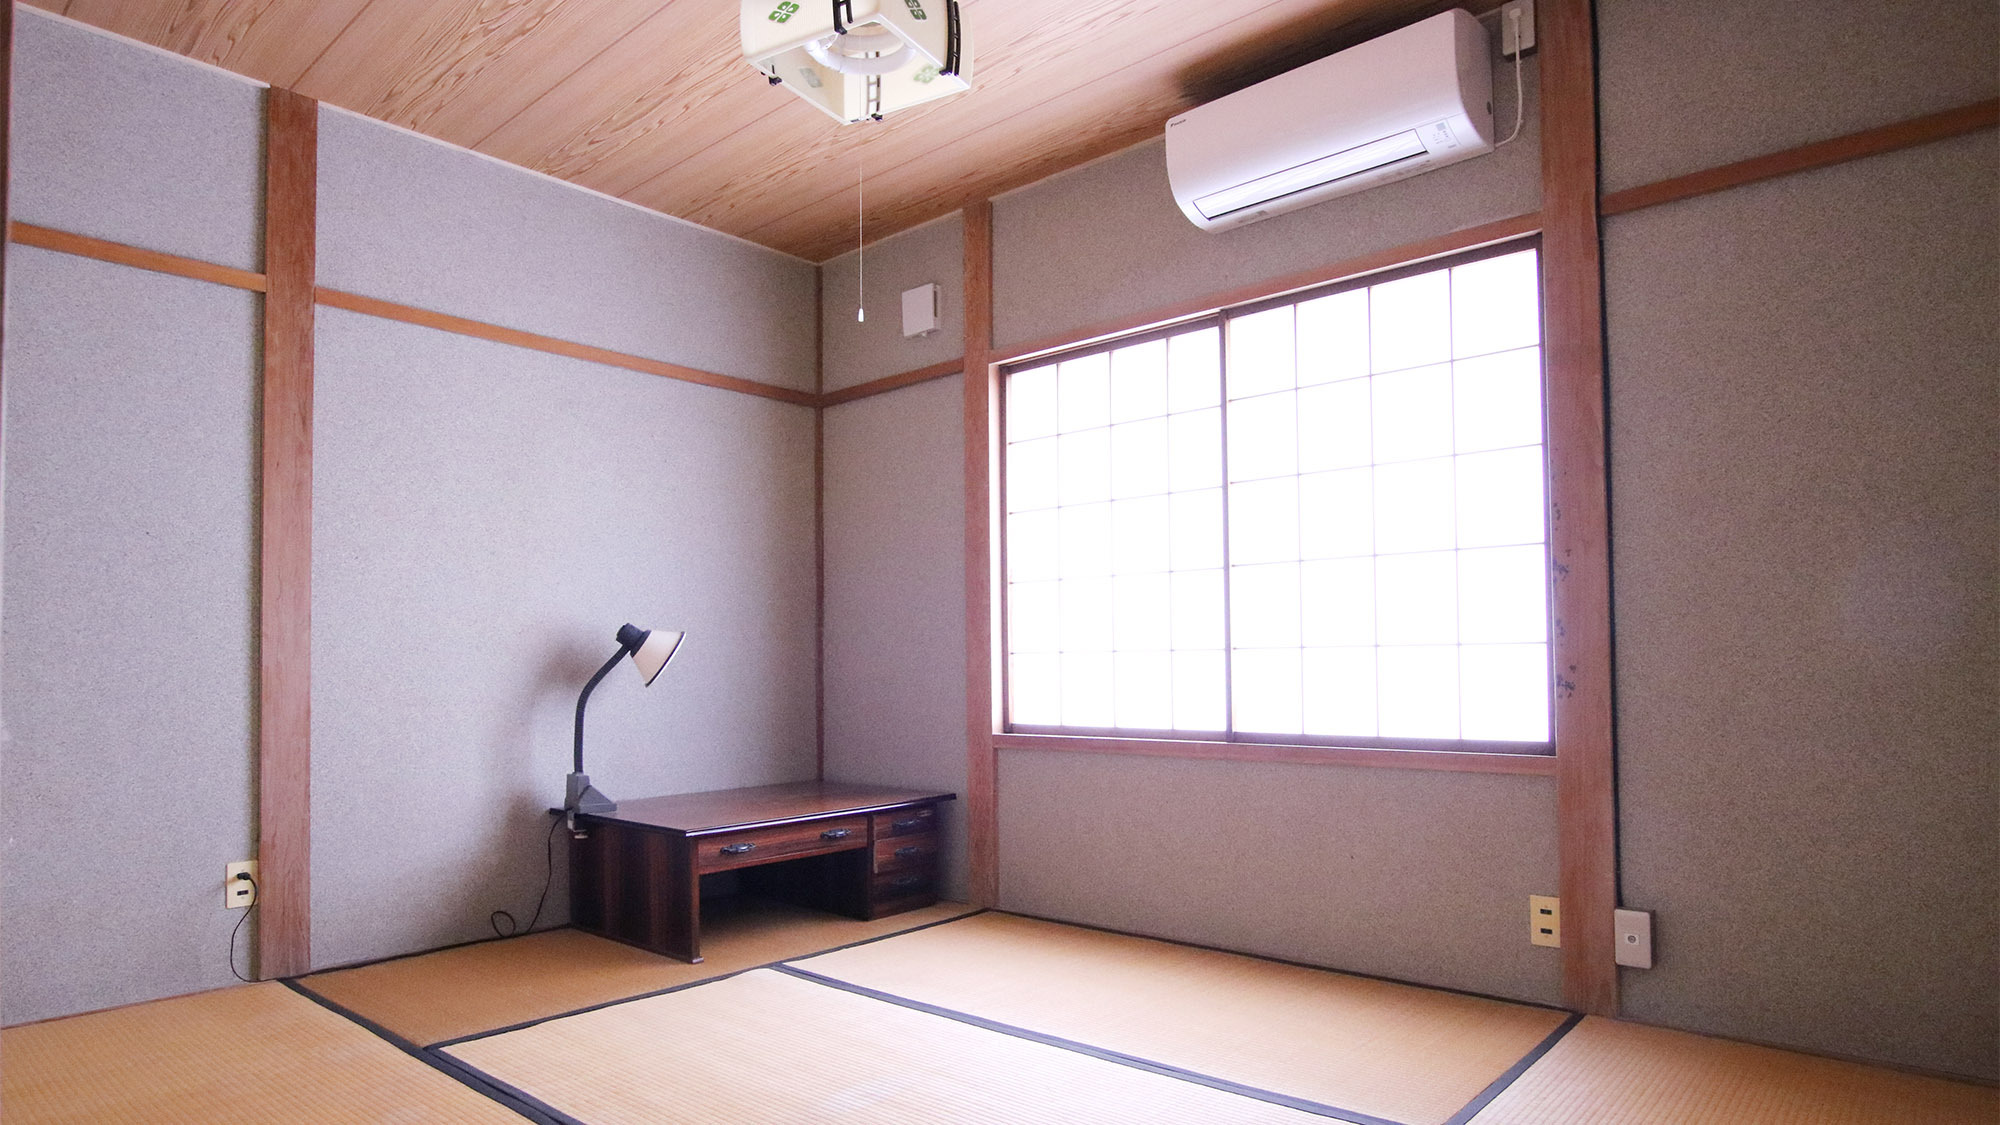 ・【6畳個室】昔ながらの日本家屋の面影をこのしつつ過ごしやすいようリフォームしています